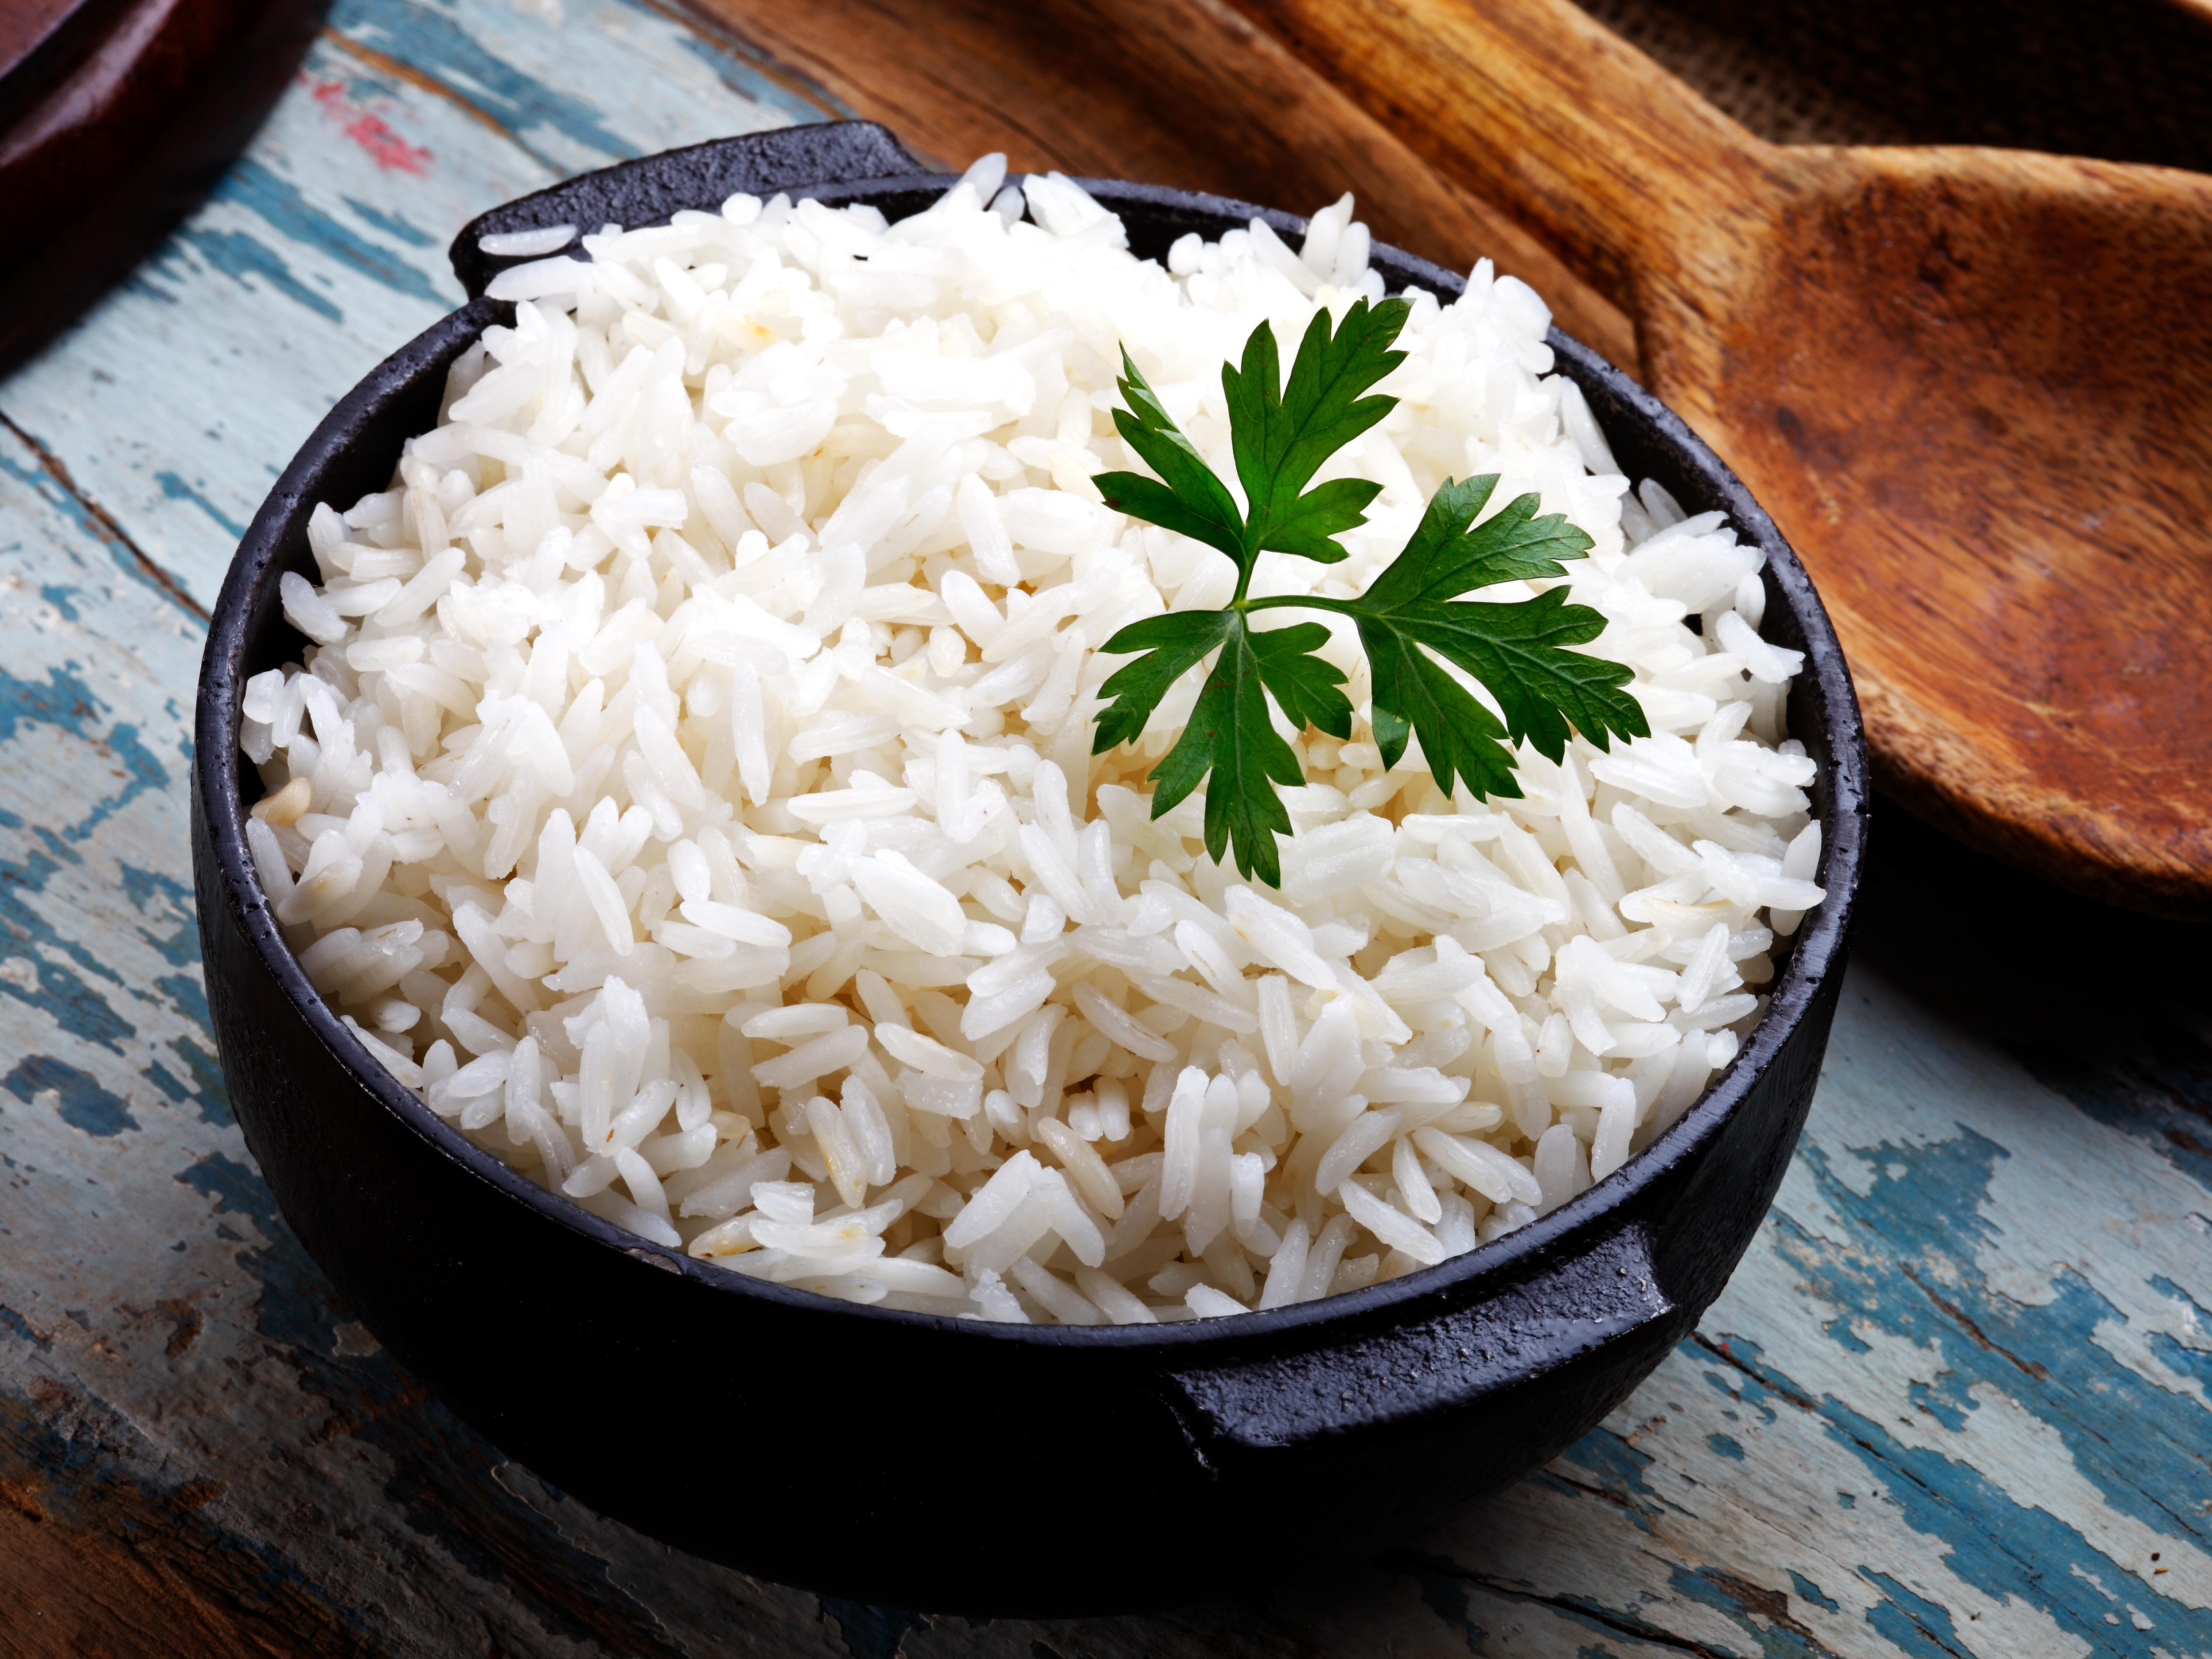 Dainty Rice  Comment cuire le riz dans un cuiseur à riz? - Dainty Rice